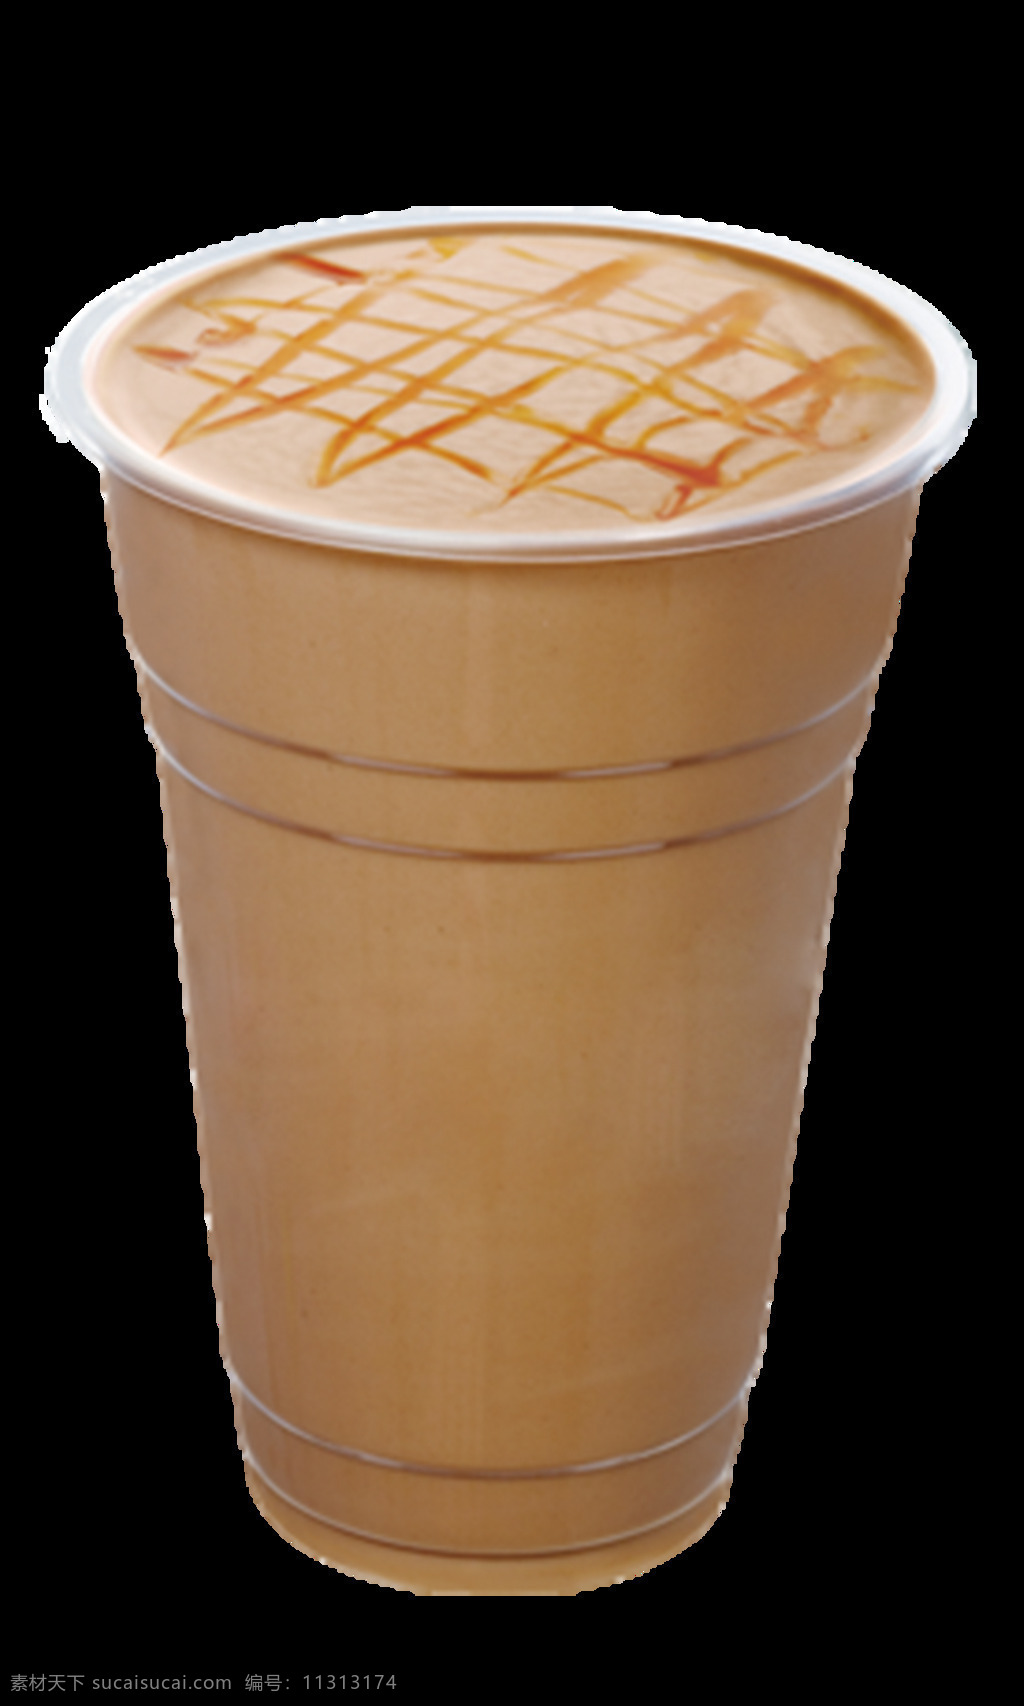 法式 玛 奇 朵 咖啡 玛奇朵咖啡 咖啡奶茶 抠好的素材 透明底 coco 抠 好 单 品 图 生活百科 餐饮美食